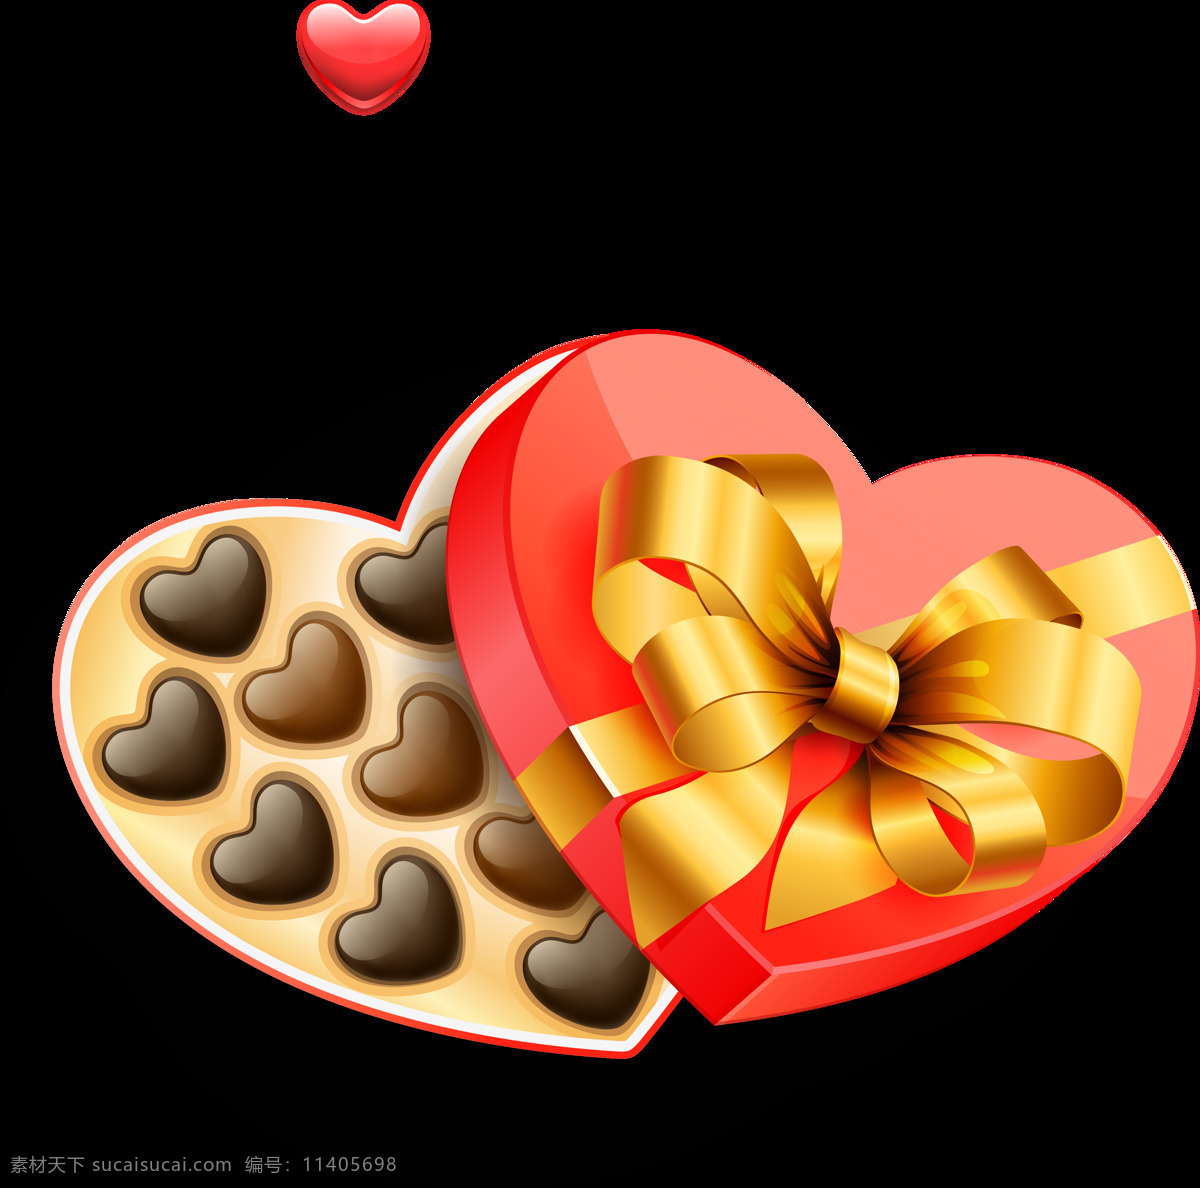 情人节 爱心 心形 巧克力 心形礼盒